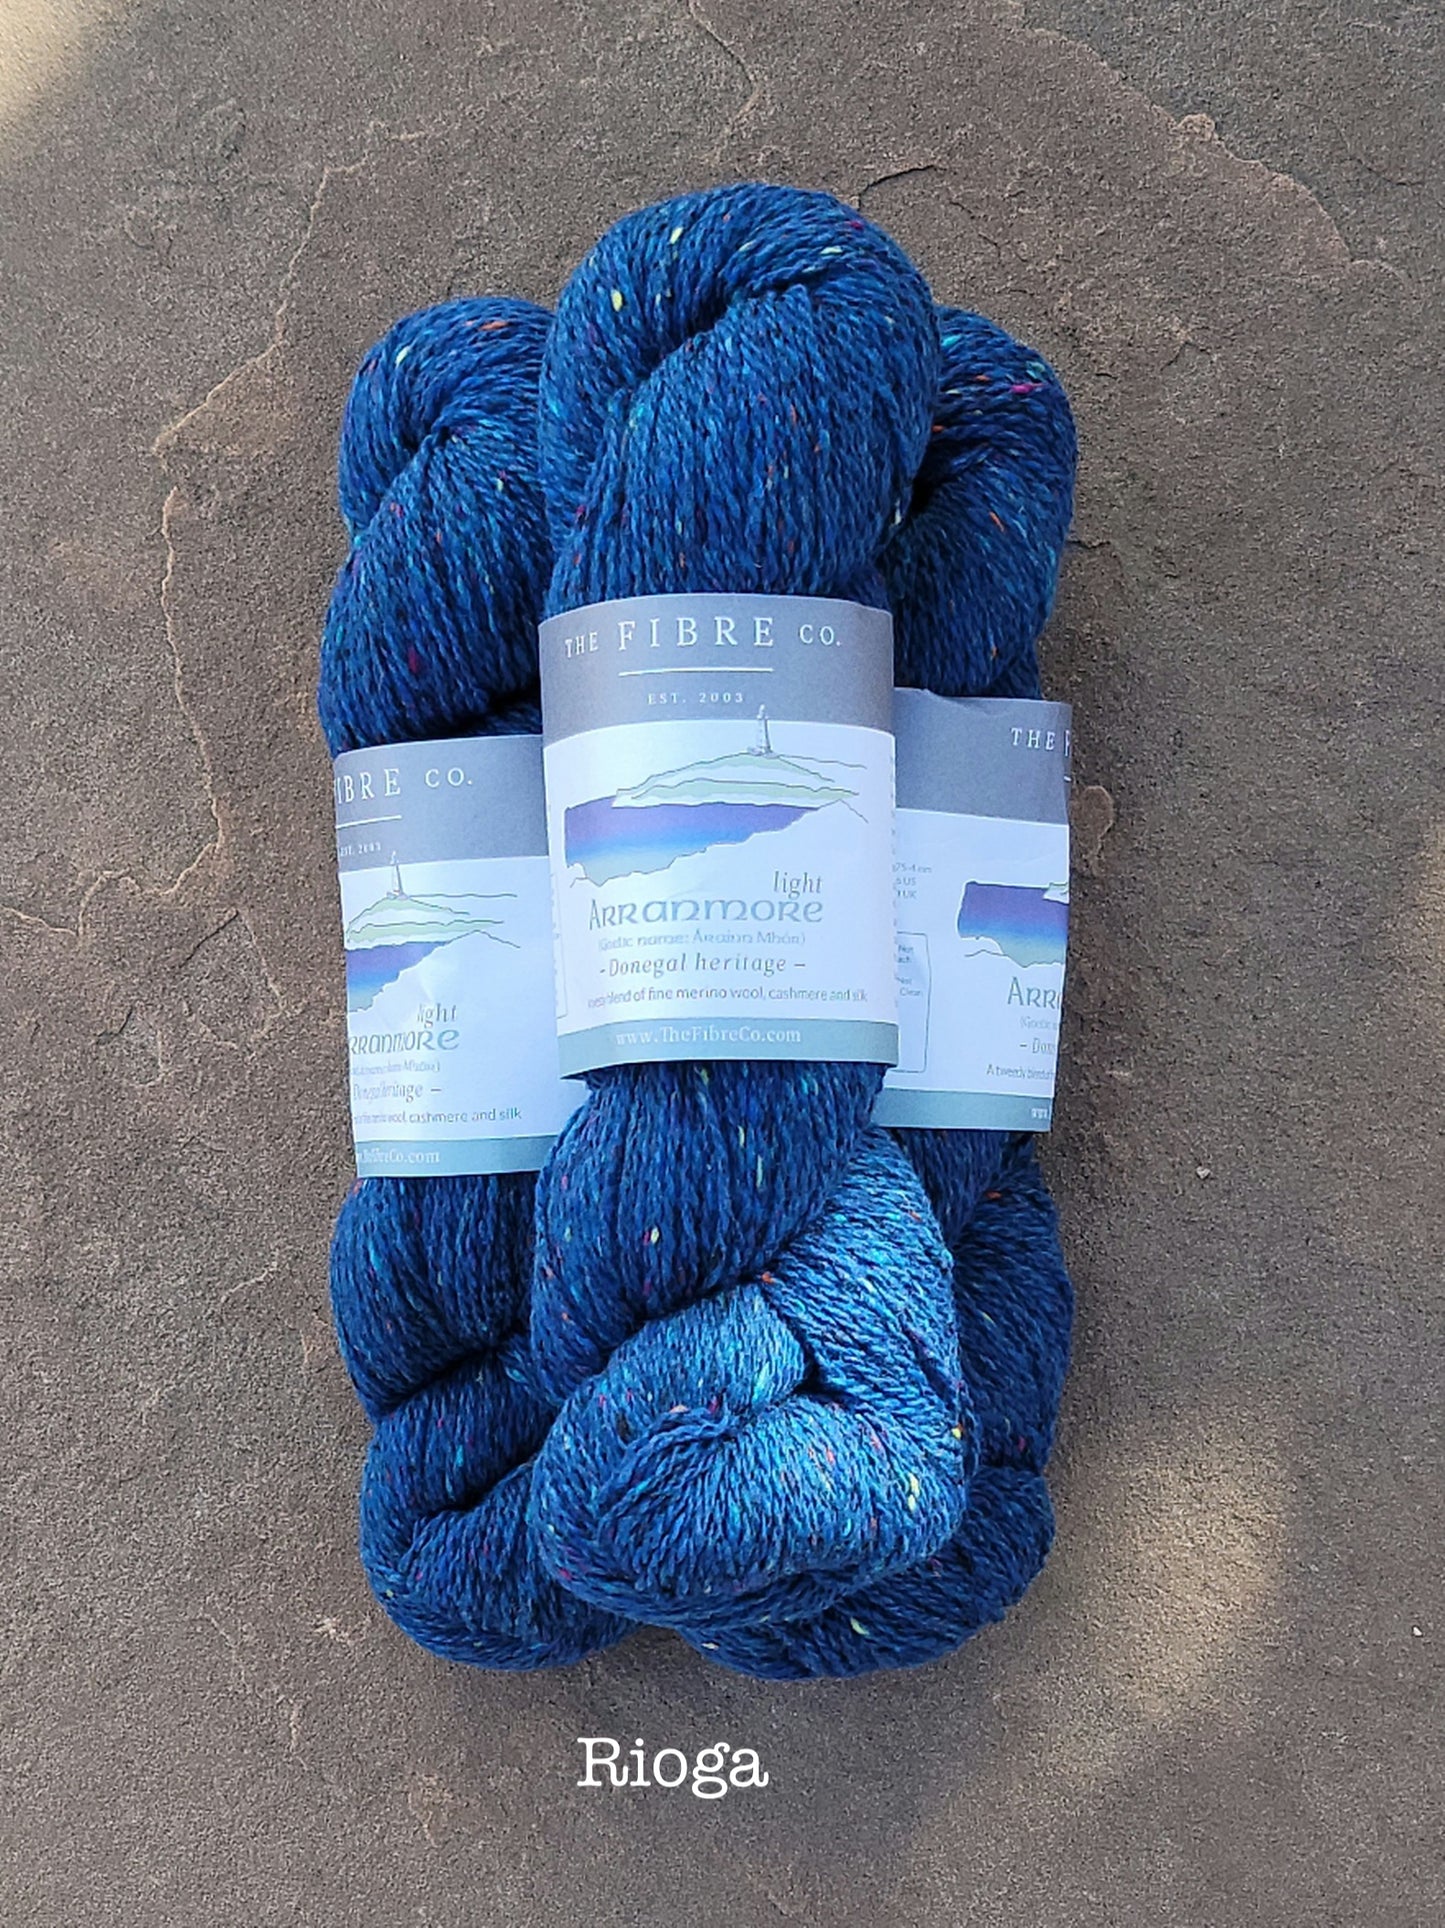 Arranmore Light - DK Tweed Yarn